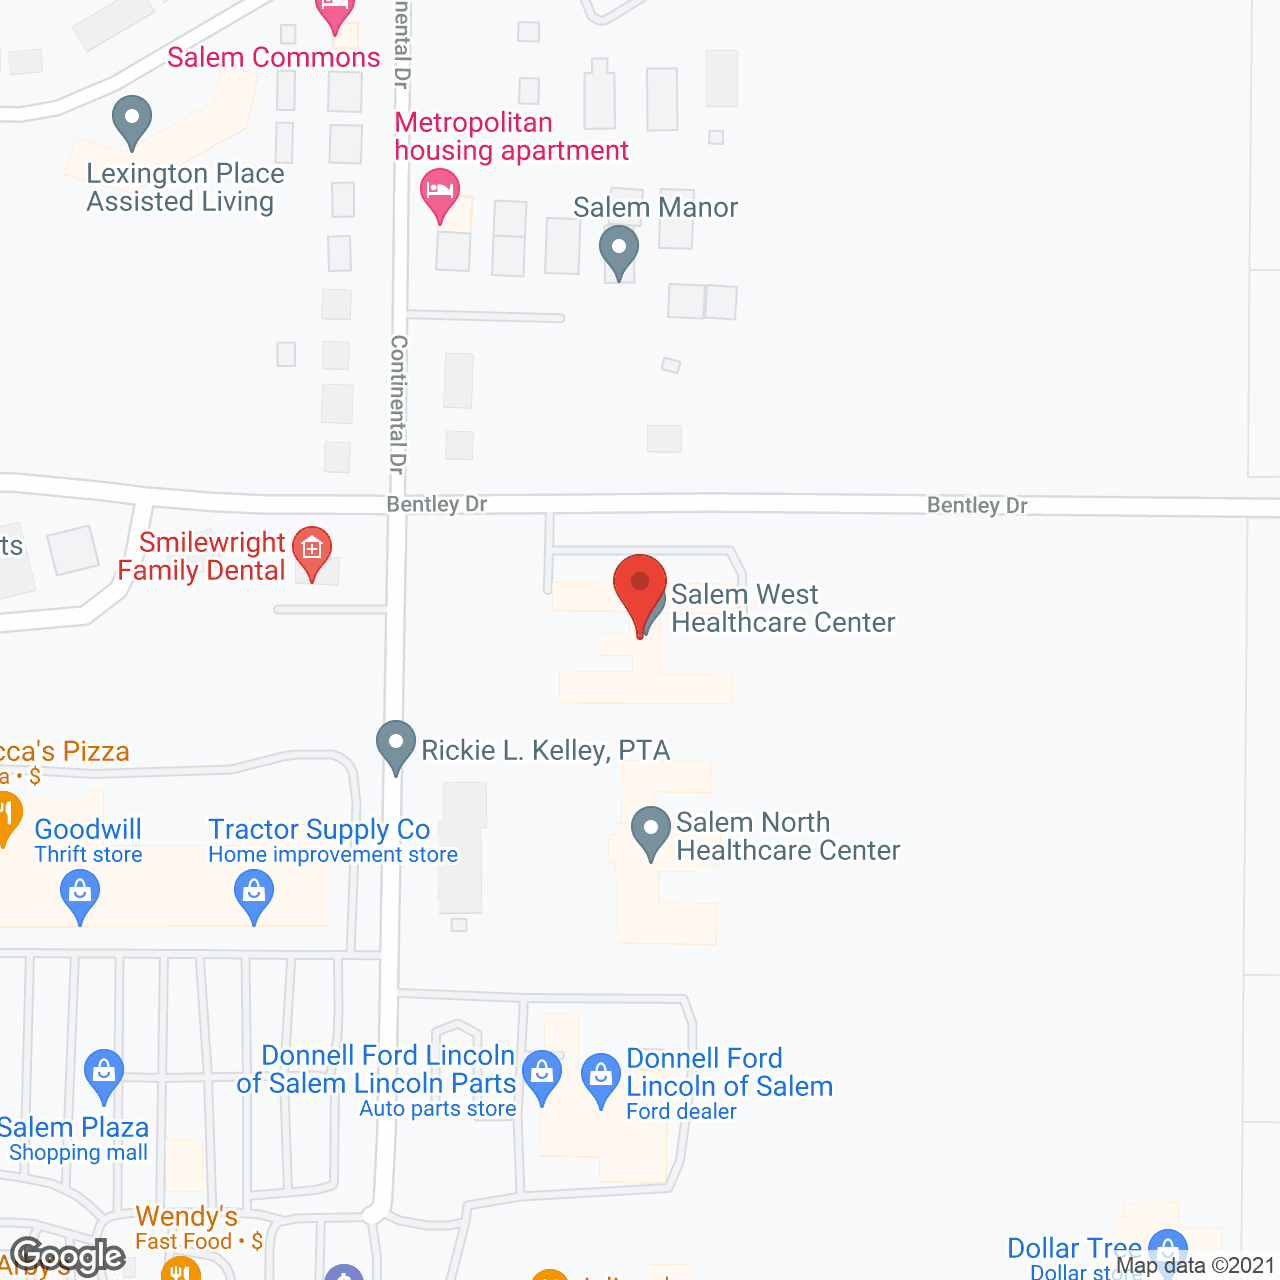 Salem West Healthcare Center in google map